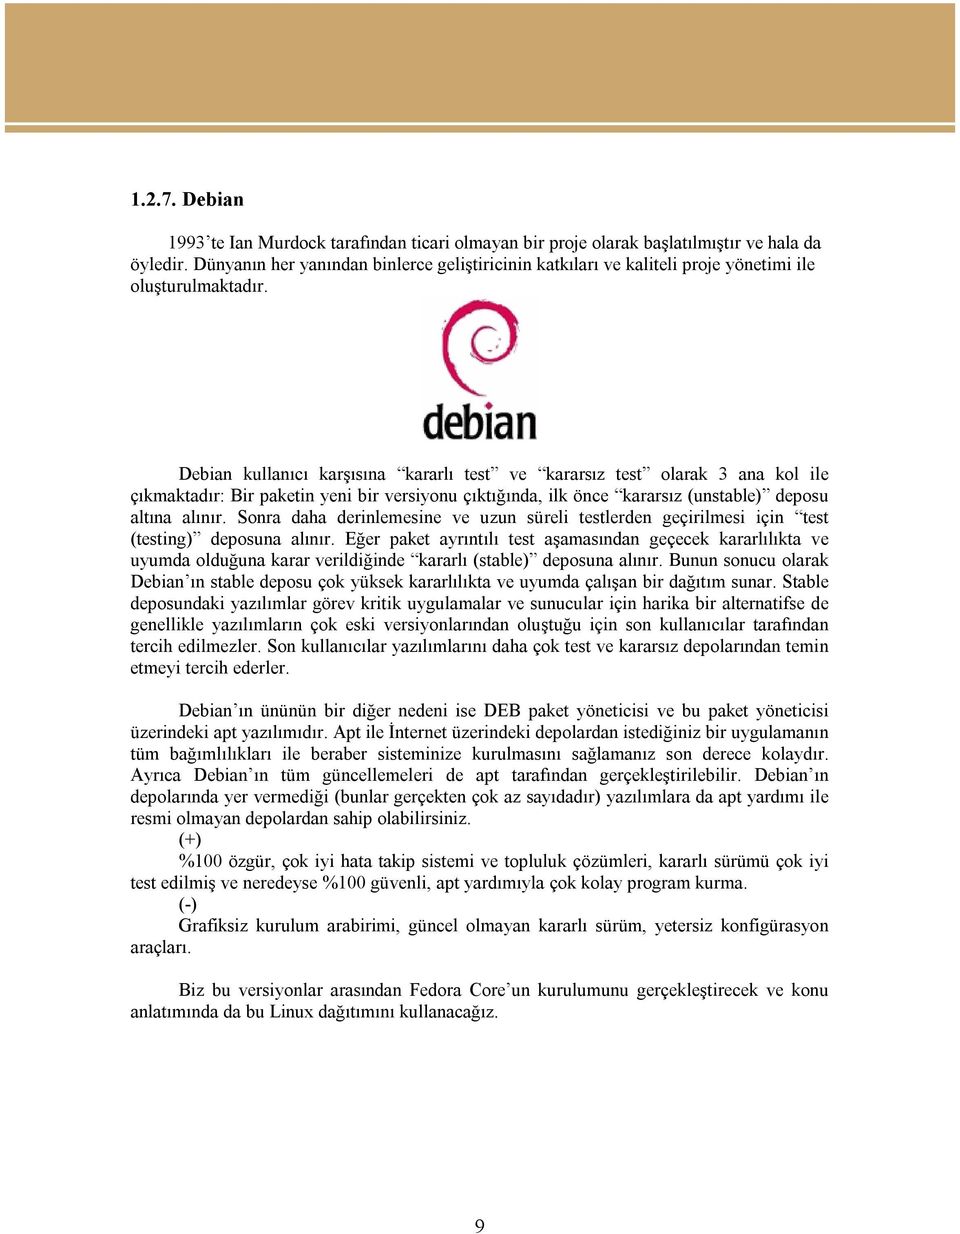 Debian kullanıcı karşısına kararlı test ve kararsız test olarak 3 ana kol ile çıkmaktadır: Bir paketin yeni bir versiyonu çıktığında, ilk önce kararsız (unstable) deposu altına alınır.